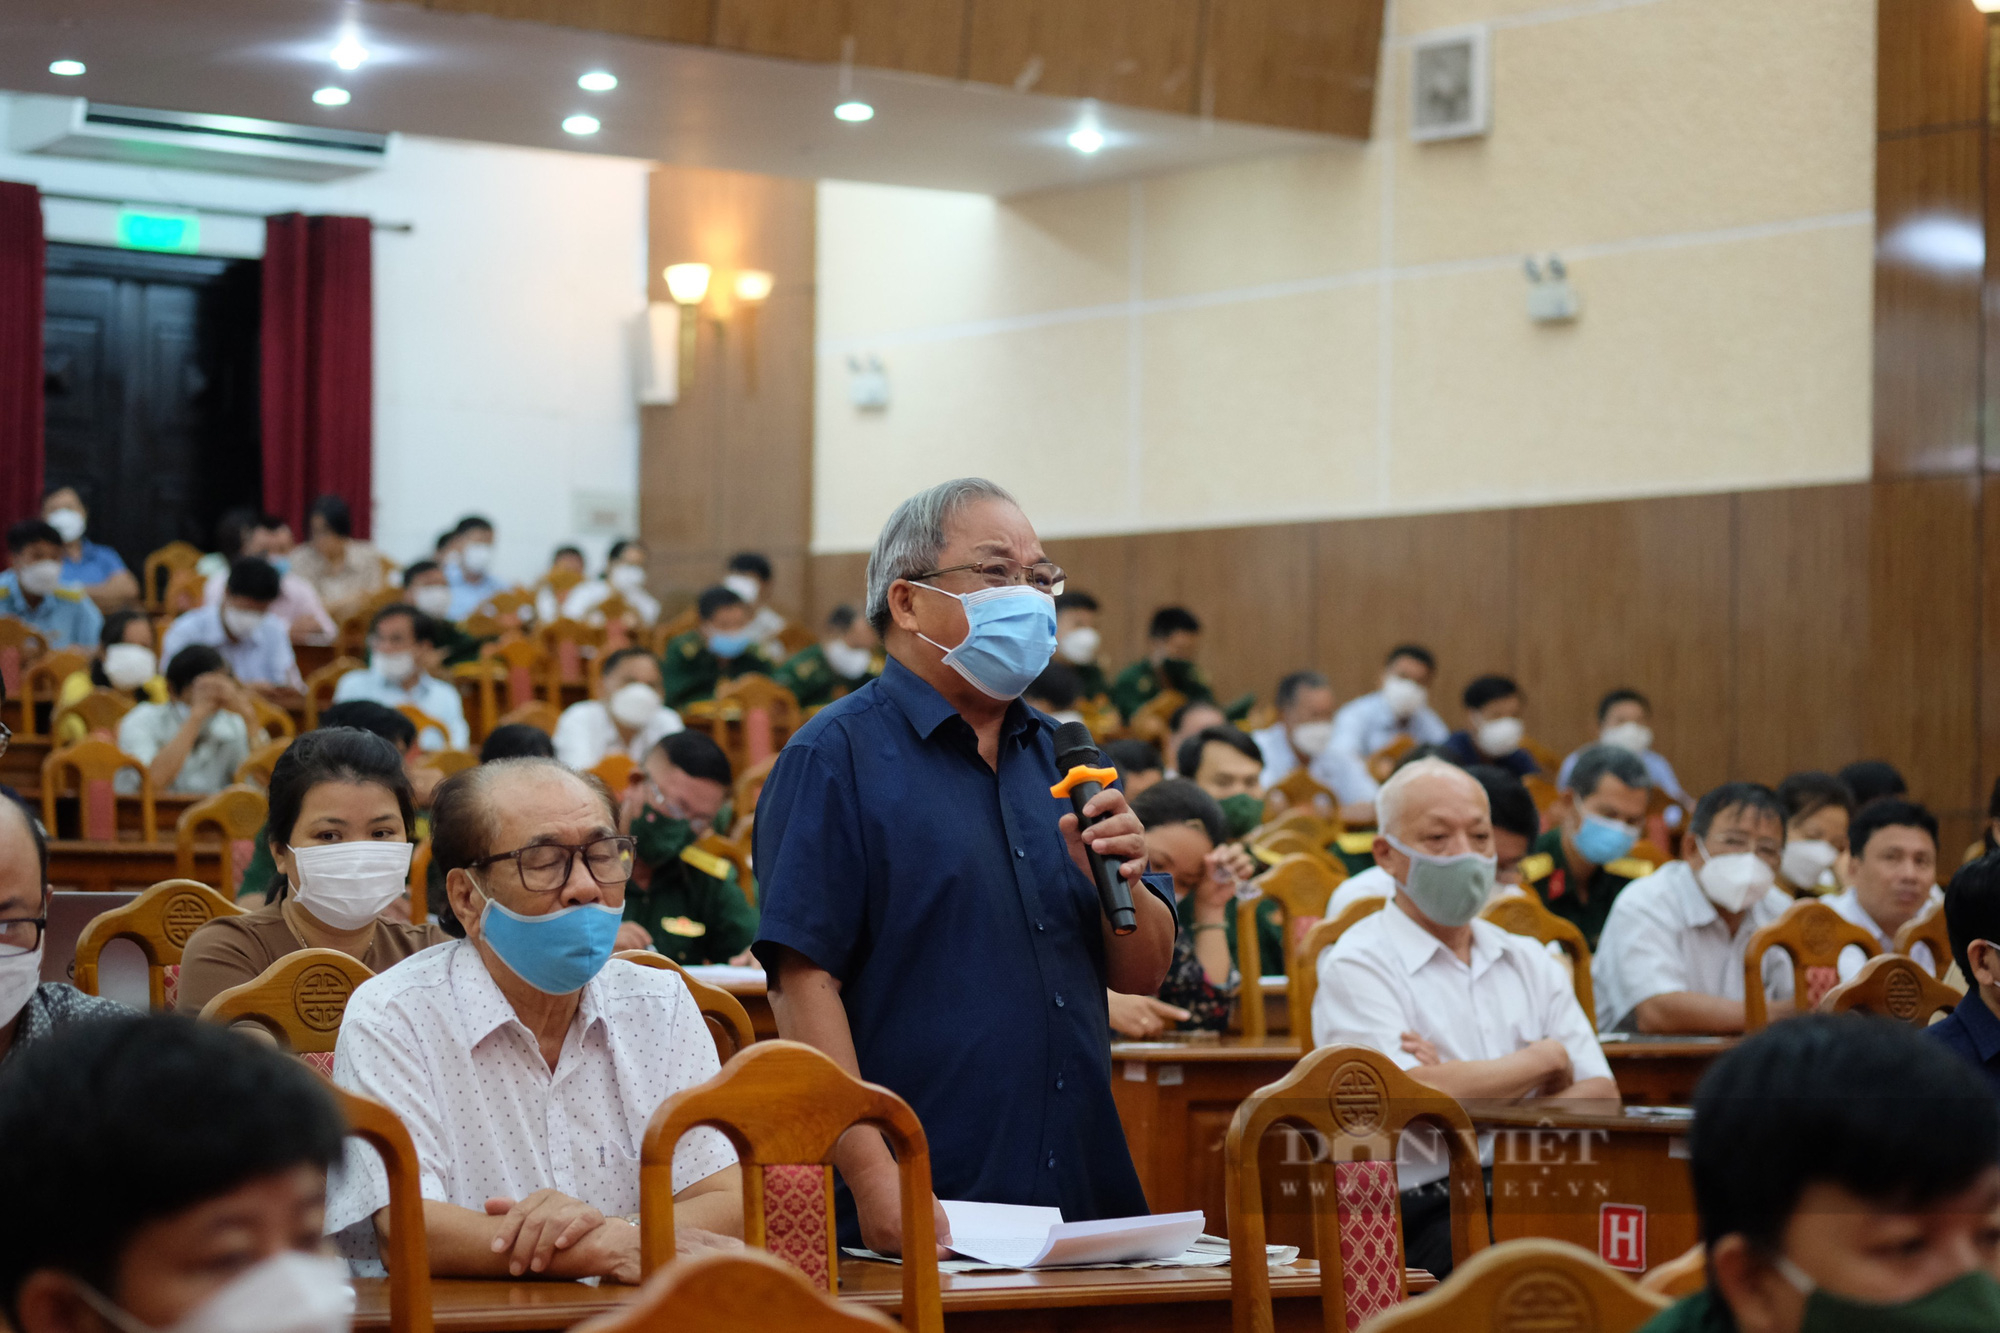 Đà Nẵng: Nóng vấn đề tham nhũng tại buổi tiếp xúc cử tri - Ảnh 1.